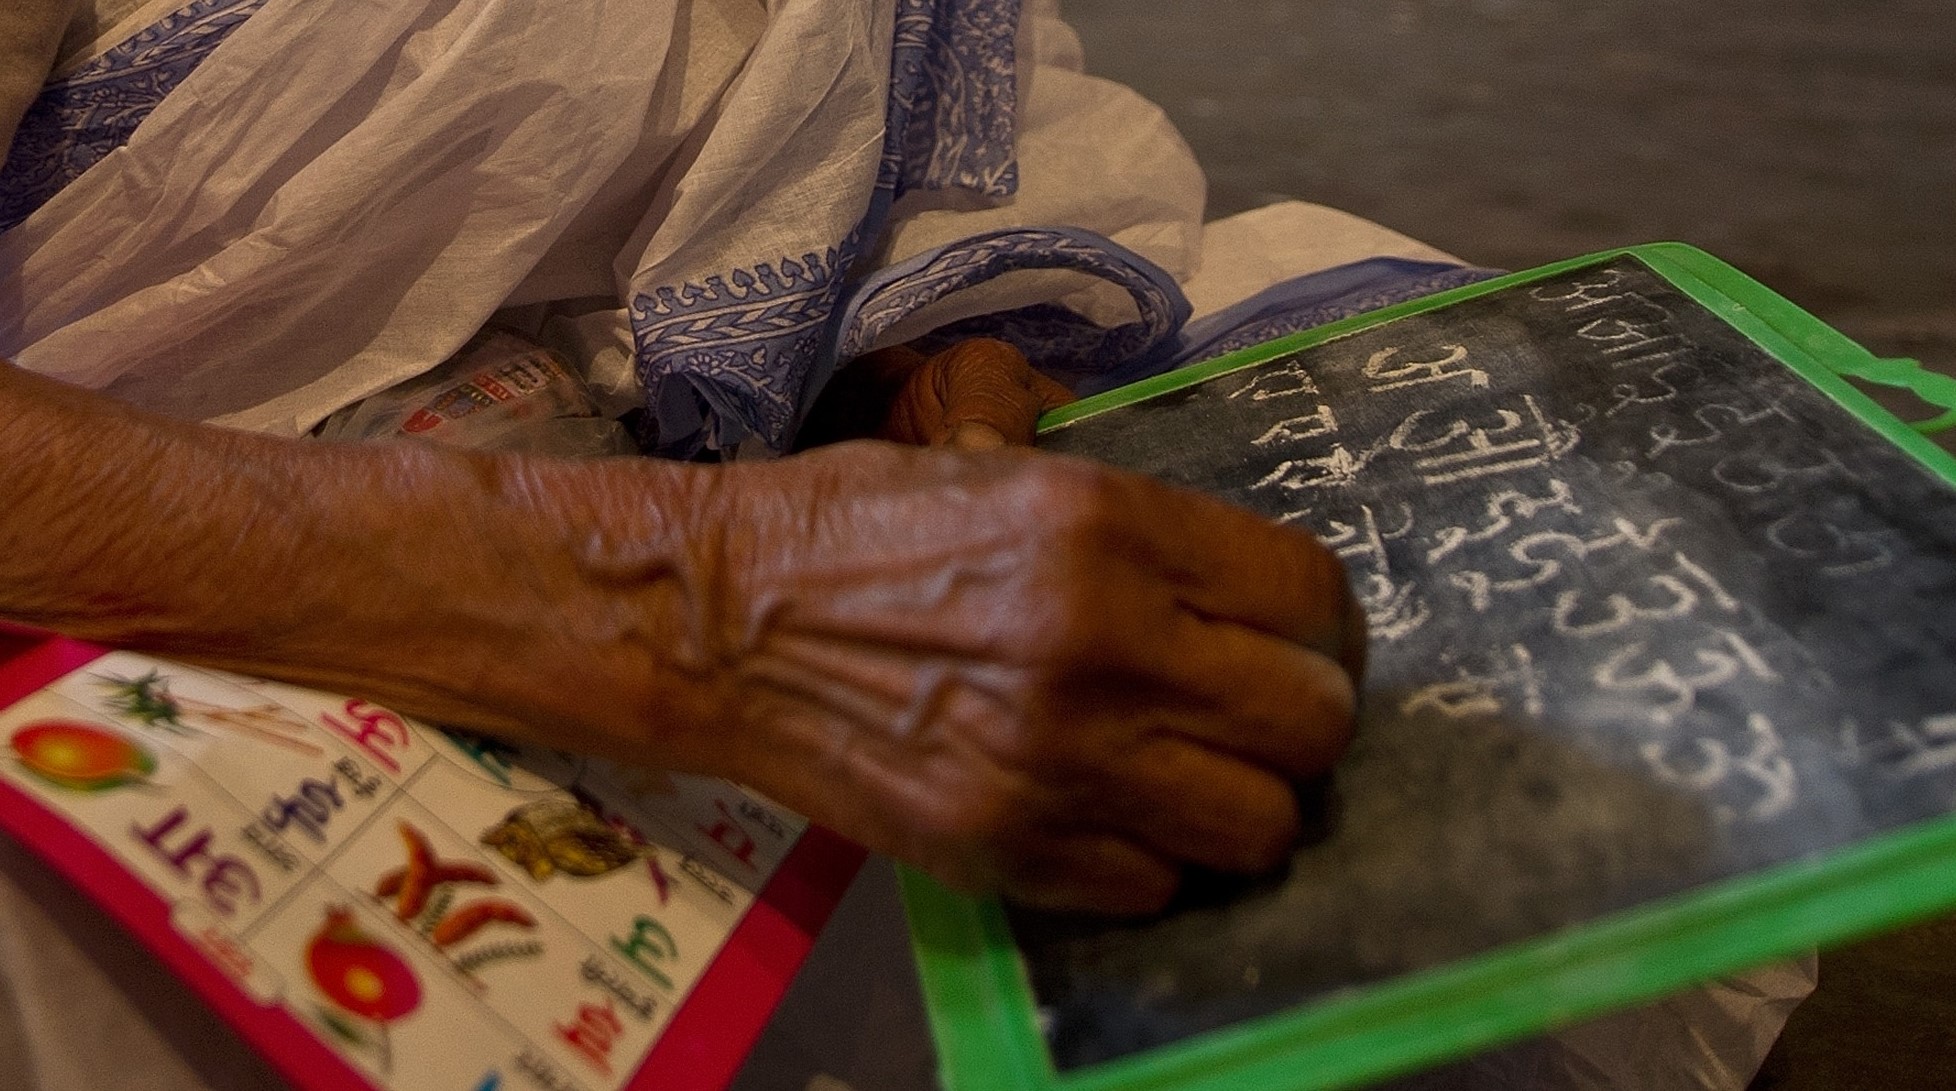 Une Indienne, scolarisée à 92 ans, réalise son rêve de savoir lire et écrire